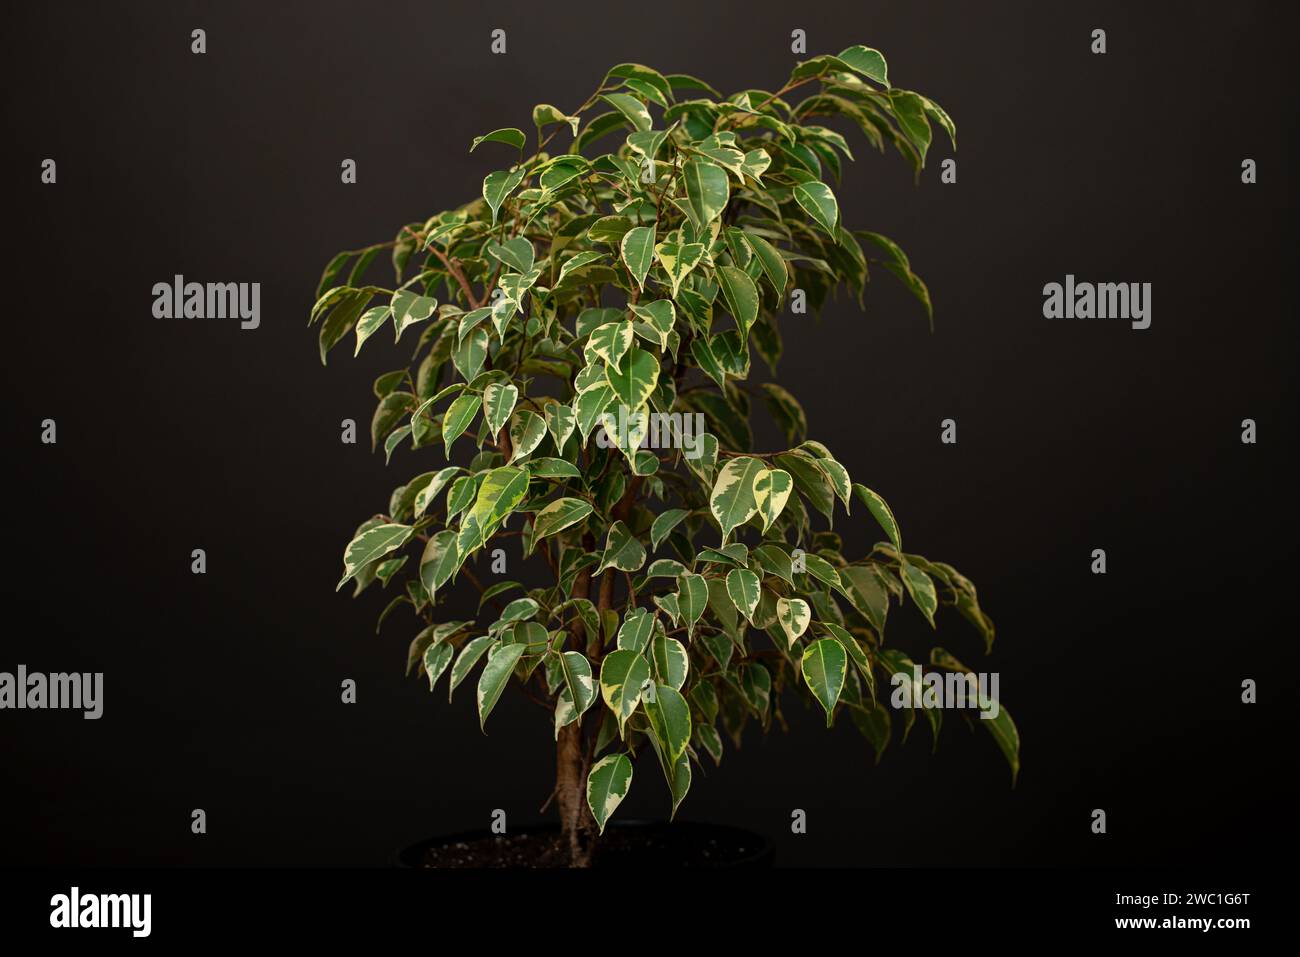 Schöne üppige Zimmerpflanze Ficus benjamina, allgemein bekannt als Trauerfeige, benjamin-Feige oder Ficus-Baum wächst in modernen schwarzen Wohnräumen. Stockfoto